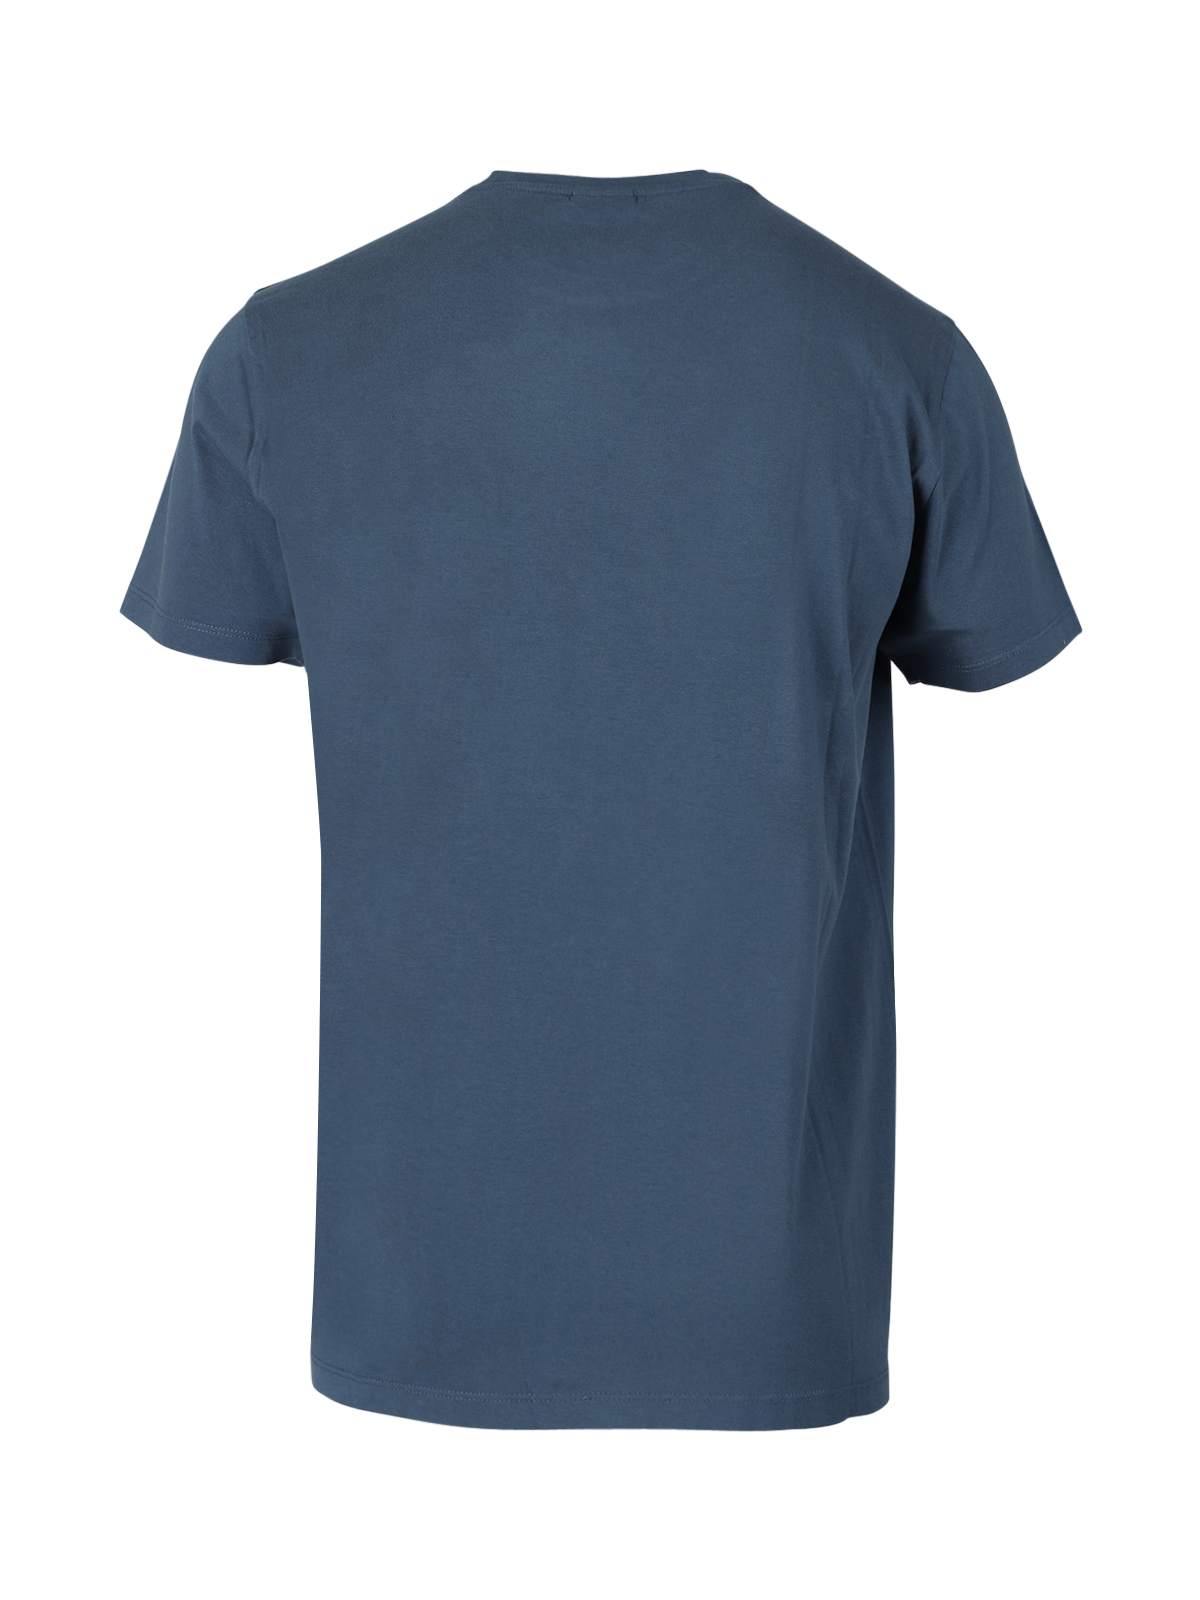 Axlon-R Herren T-Shirt | Blau